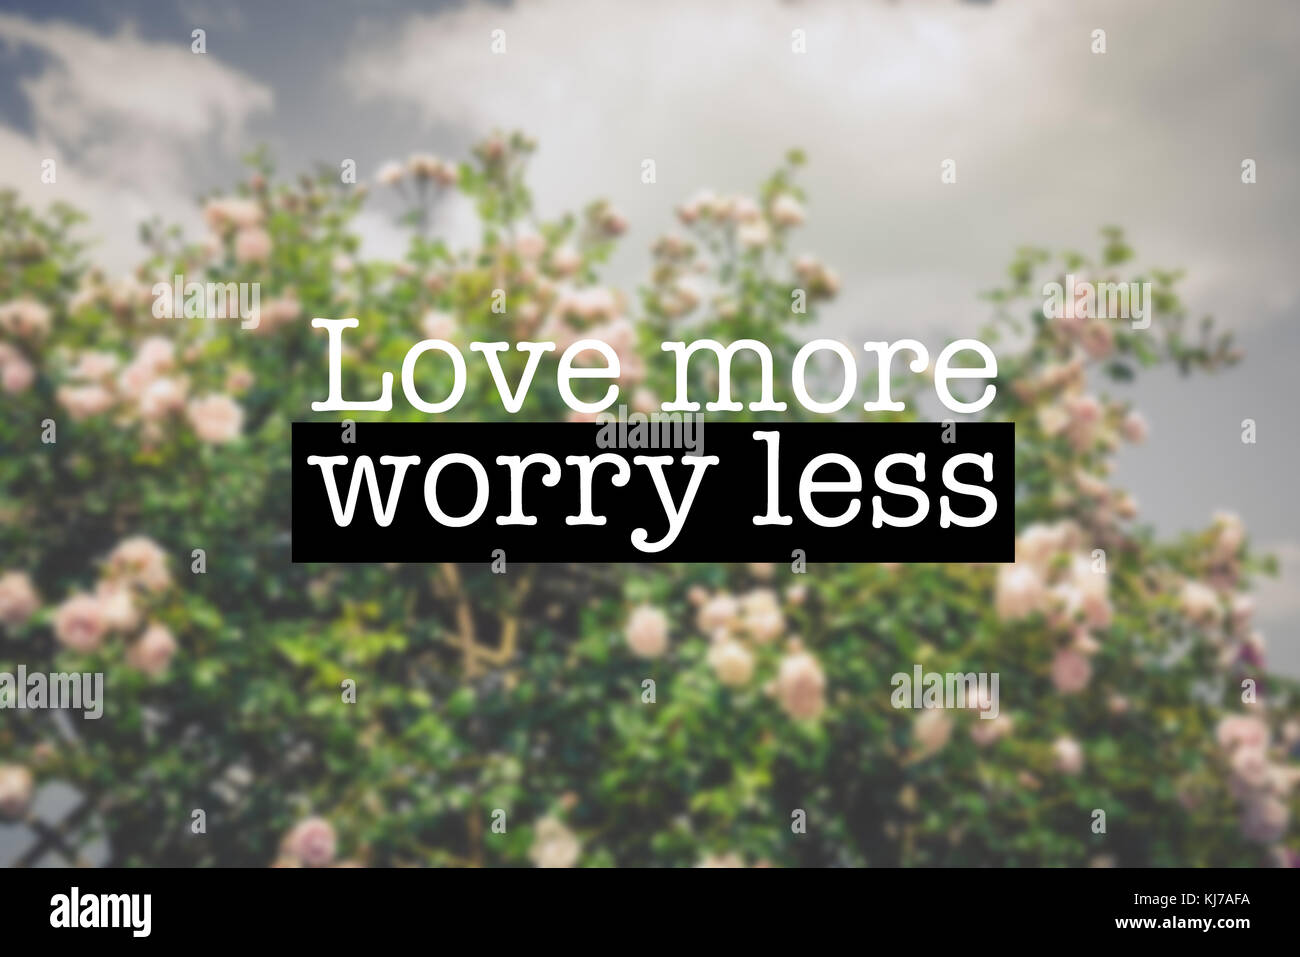 Inspirational motivation Zitat mit dem Satz "Liebe mehr weniger Sorgen", blühende Rosen Blumen Hintergrund Stockfoto